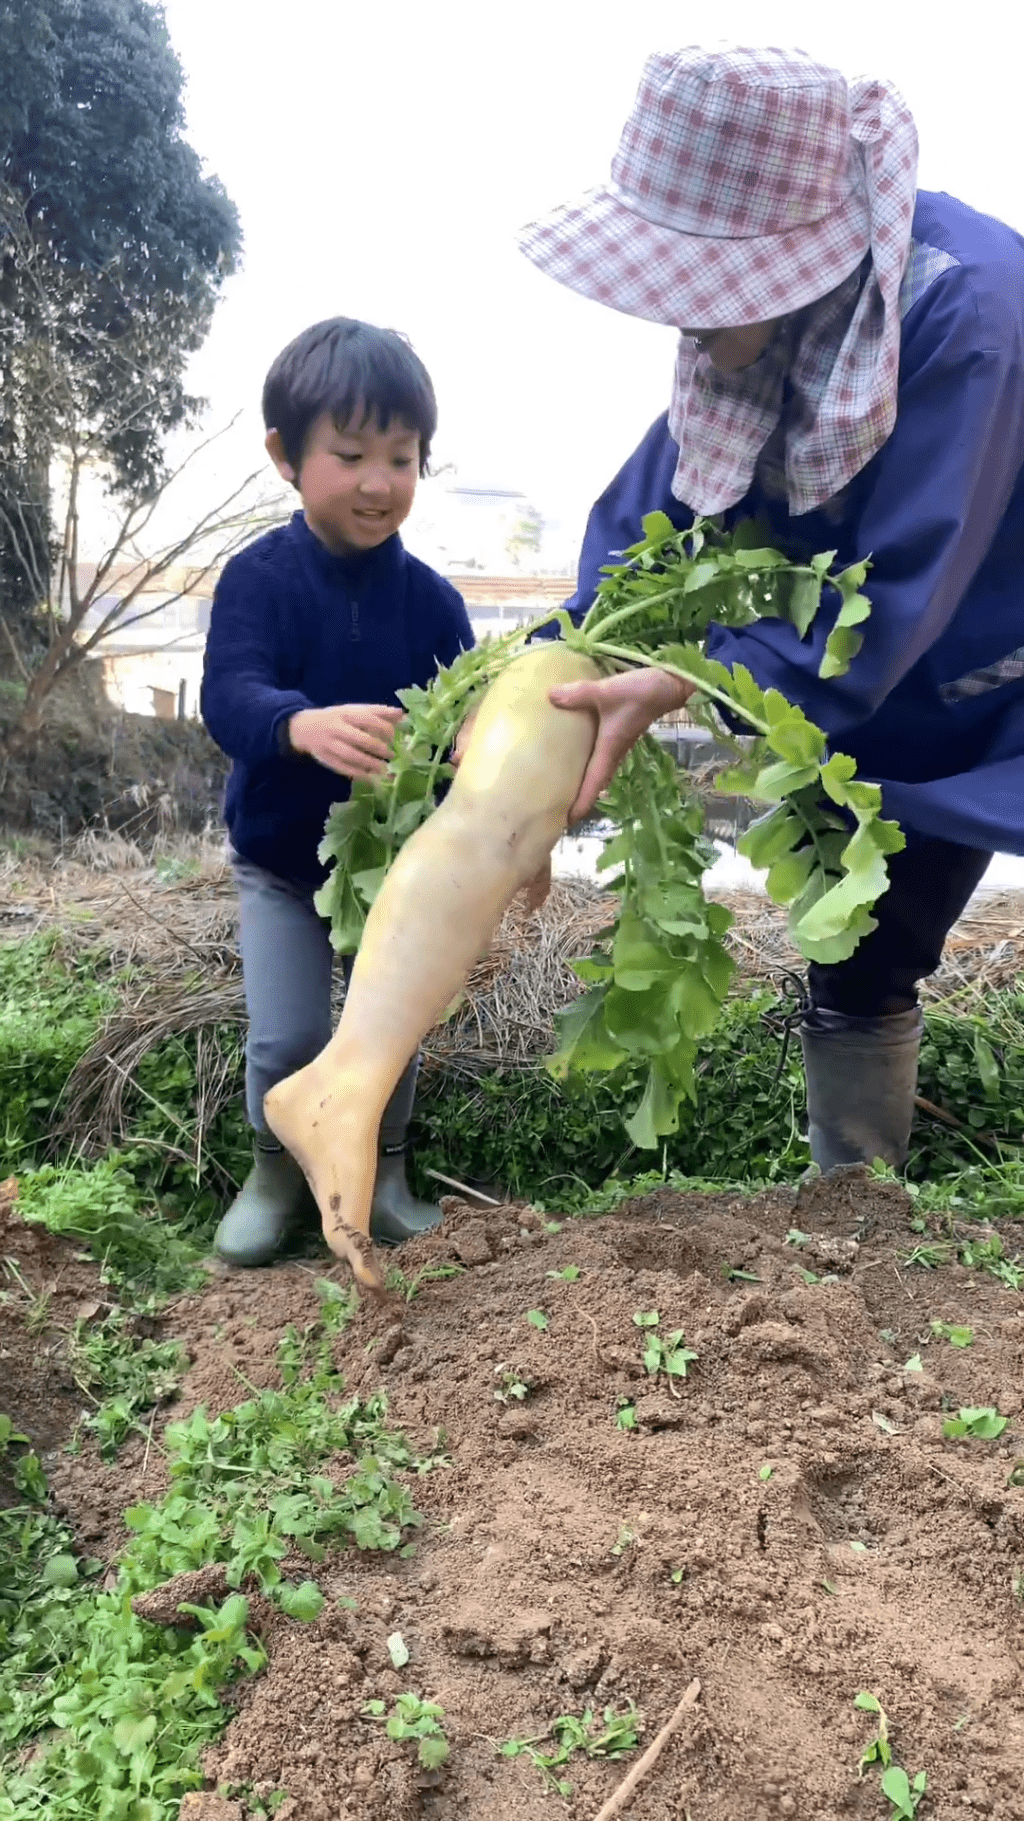 農夫即時將「蘿蔔腳」遞給小童